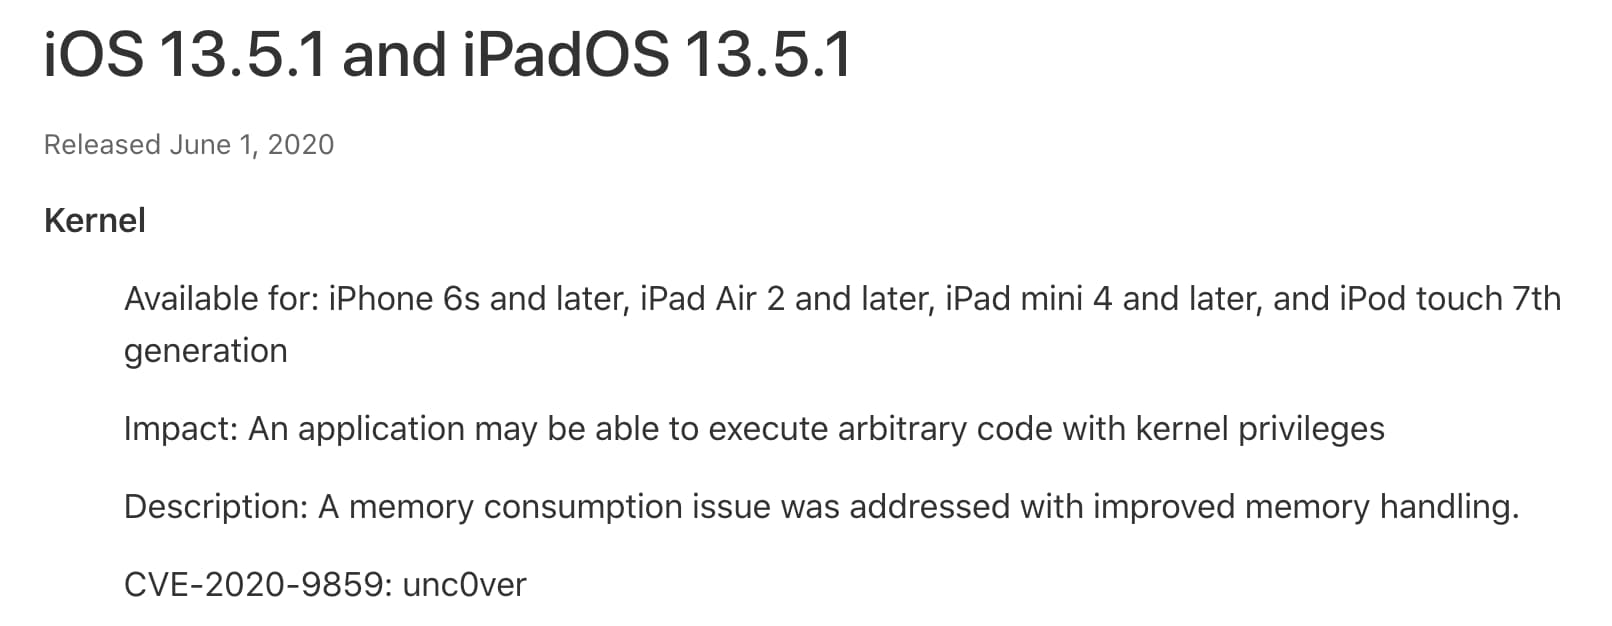 apple ios 13 5 1 security updates